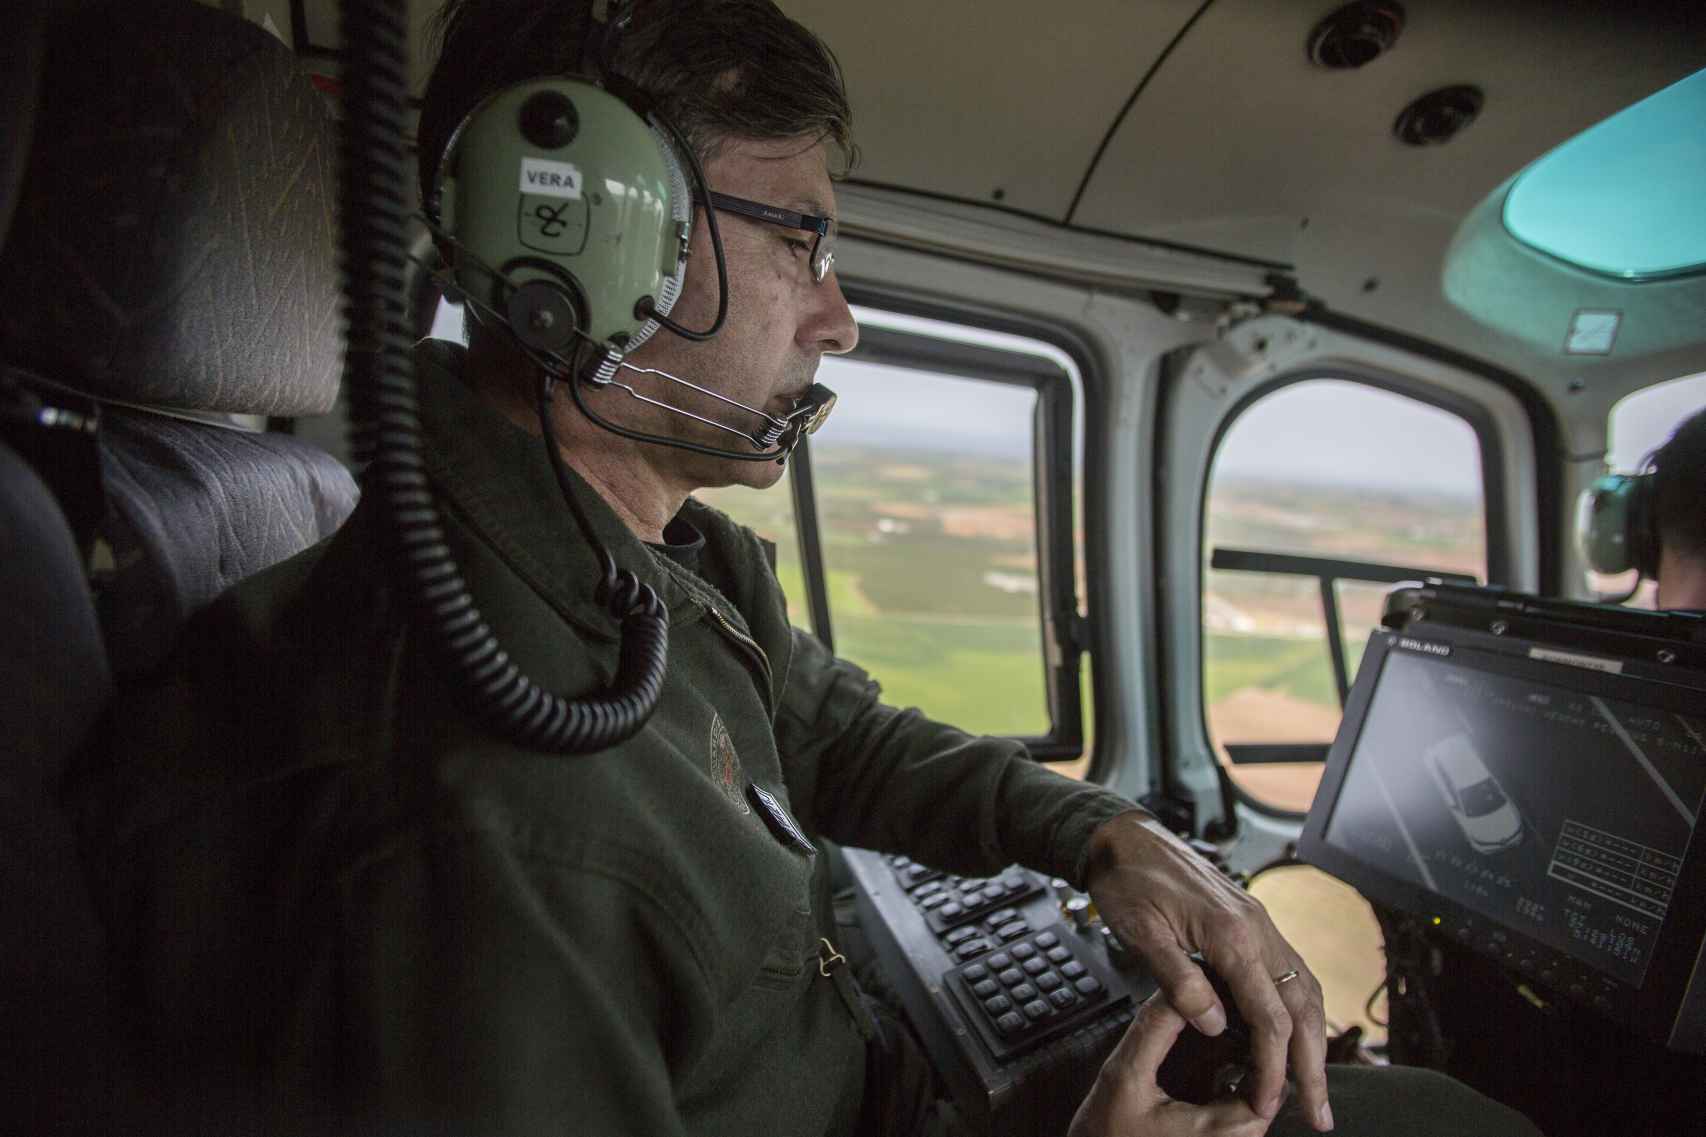 Fernando Vera, Cabo Primero de la agrupación de tráfico de la guardia civil, operando las cámaras del helicóptero de la DGT.